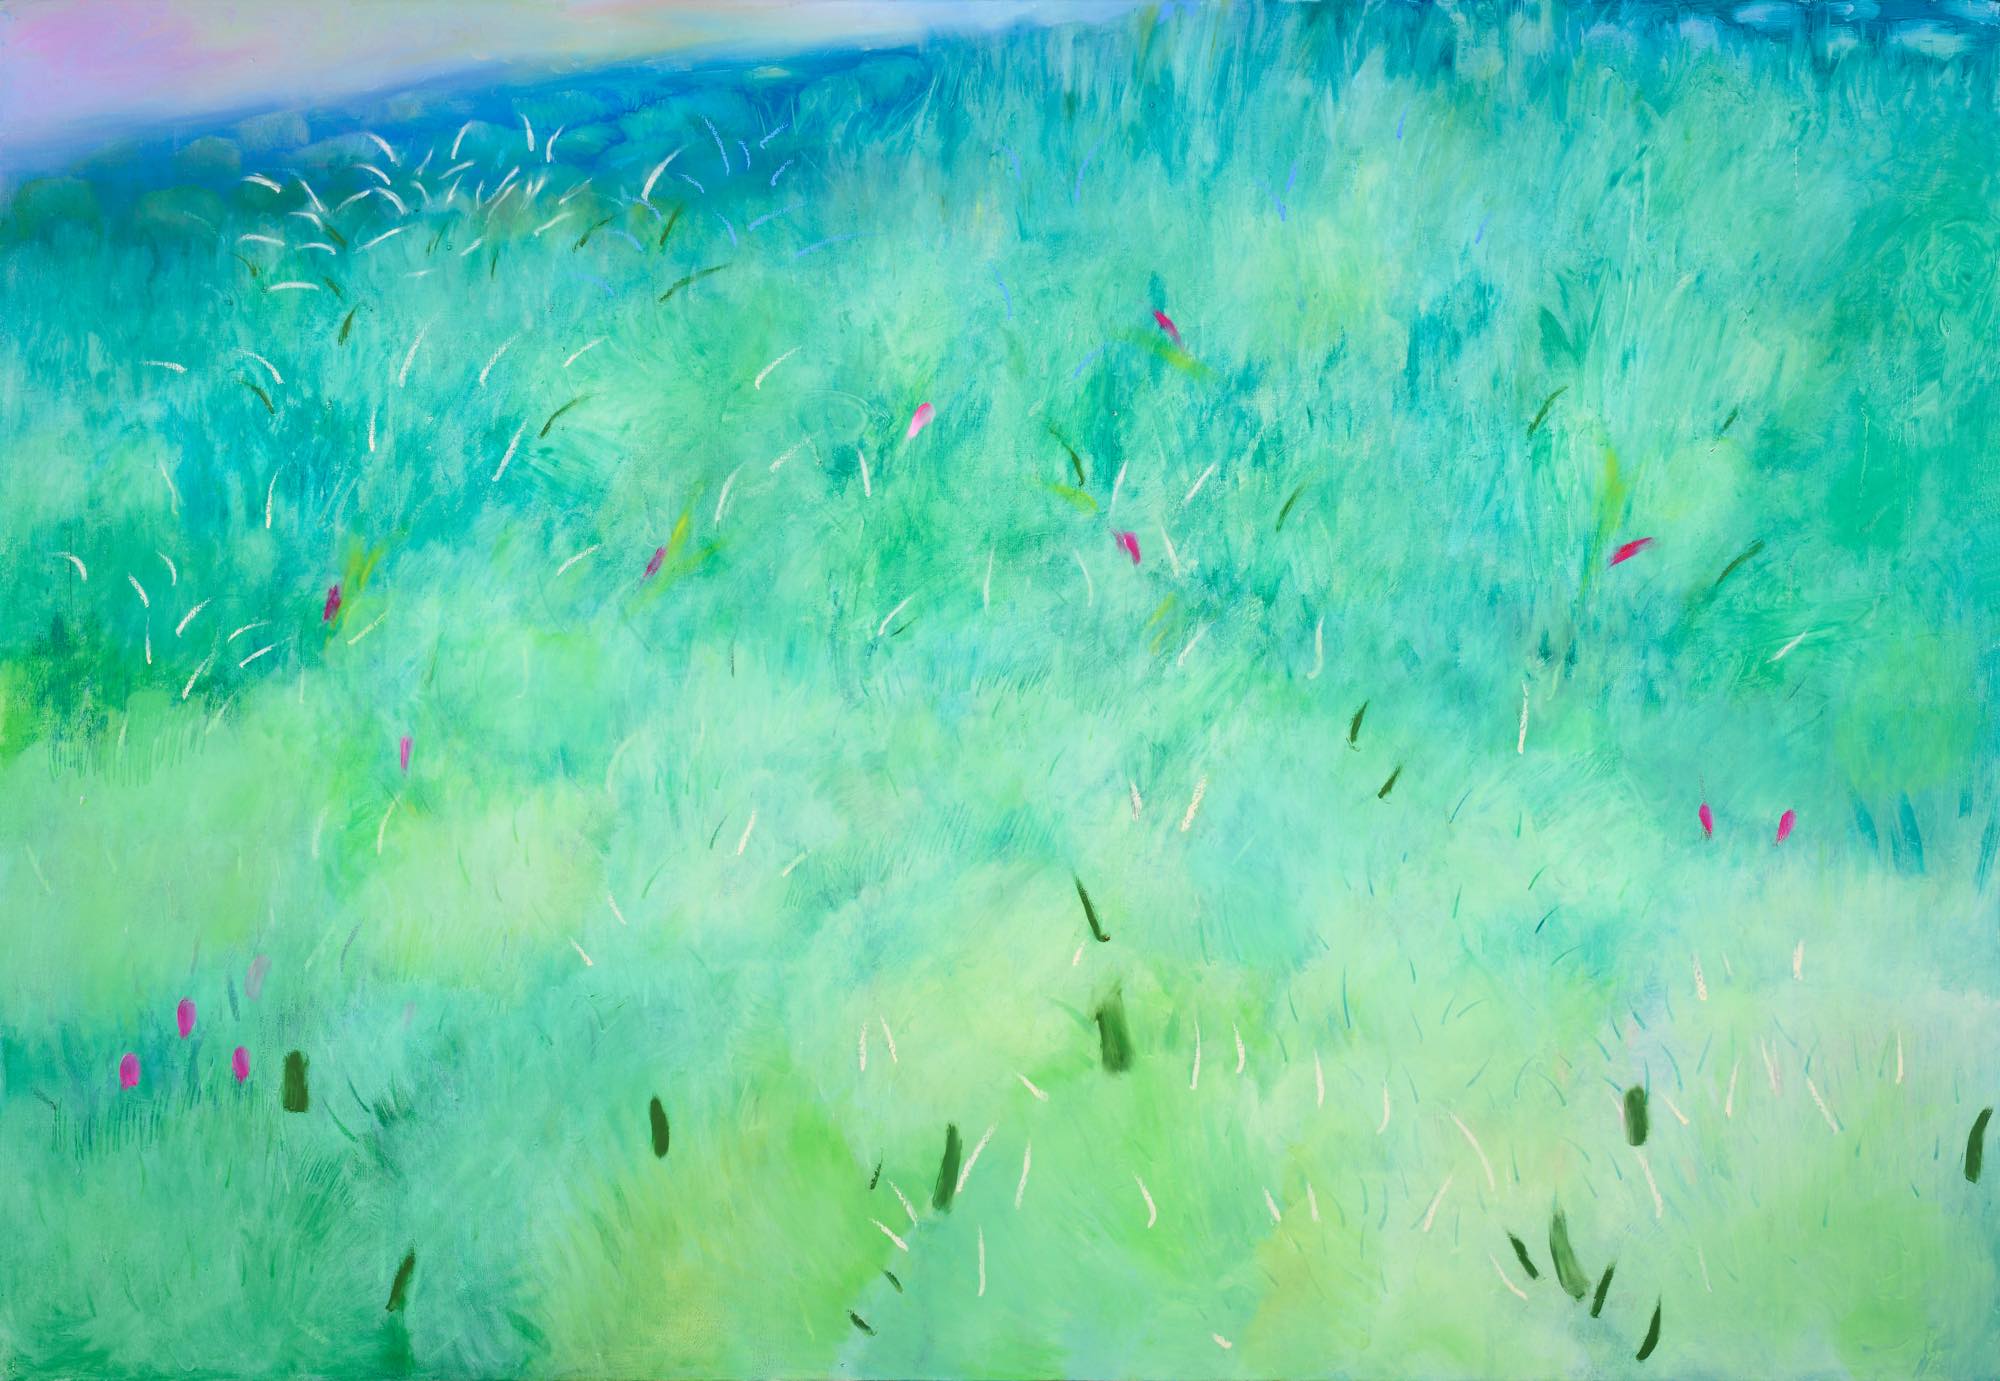 Hyesim Choi, Oil on Canvas, 162cm(W) x 112cm(H), 2020